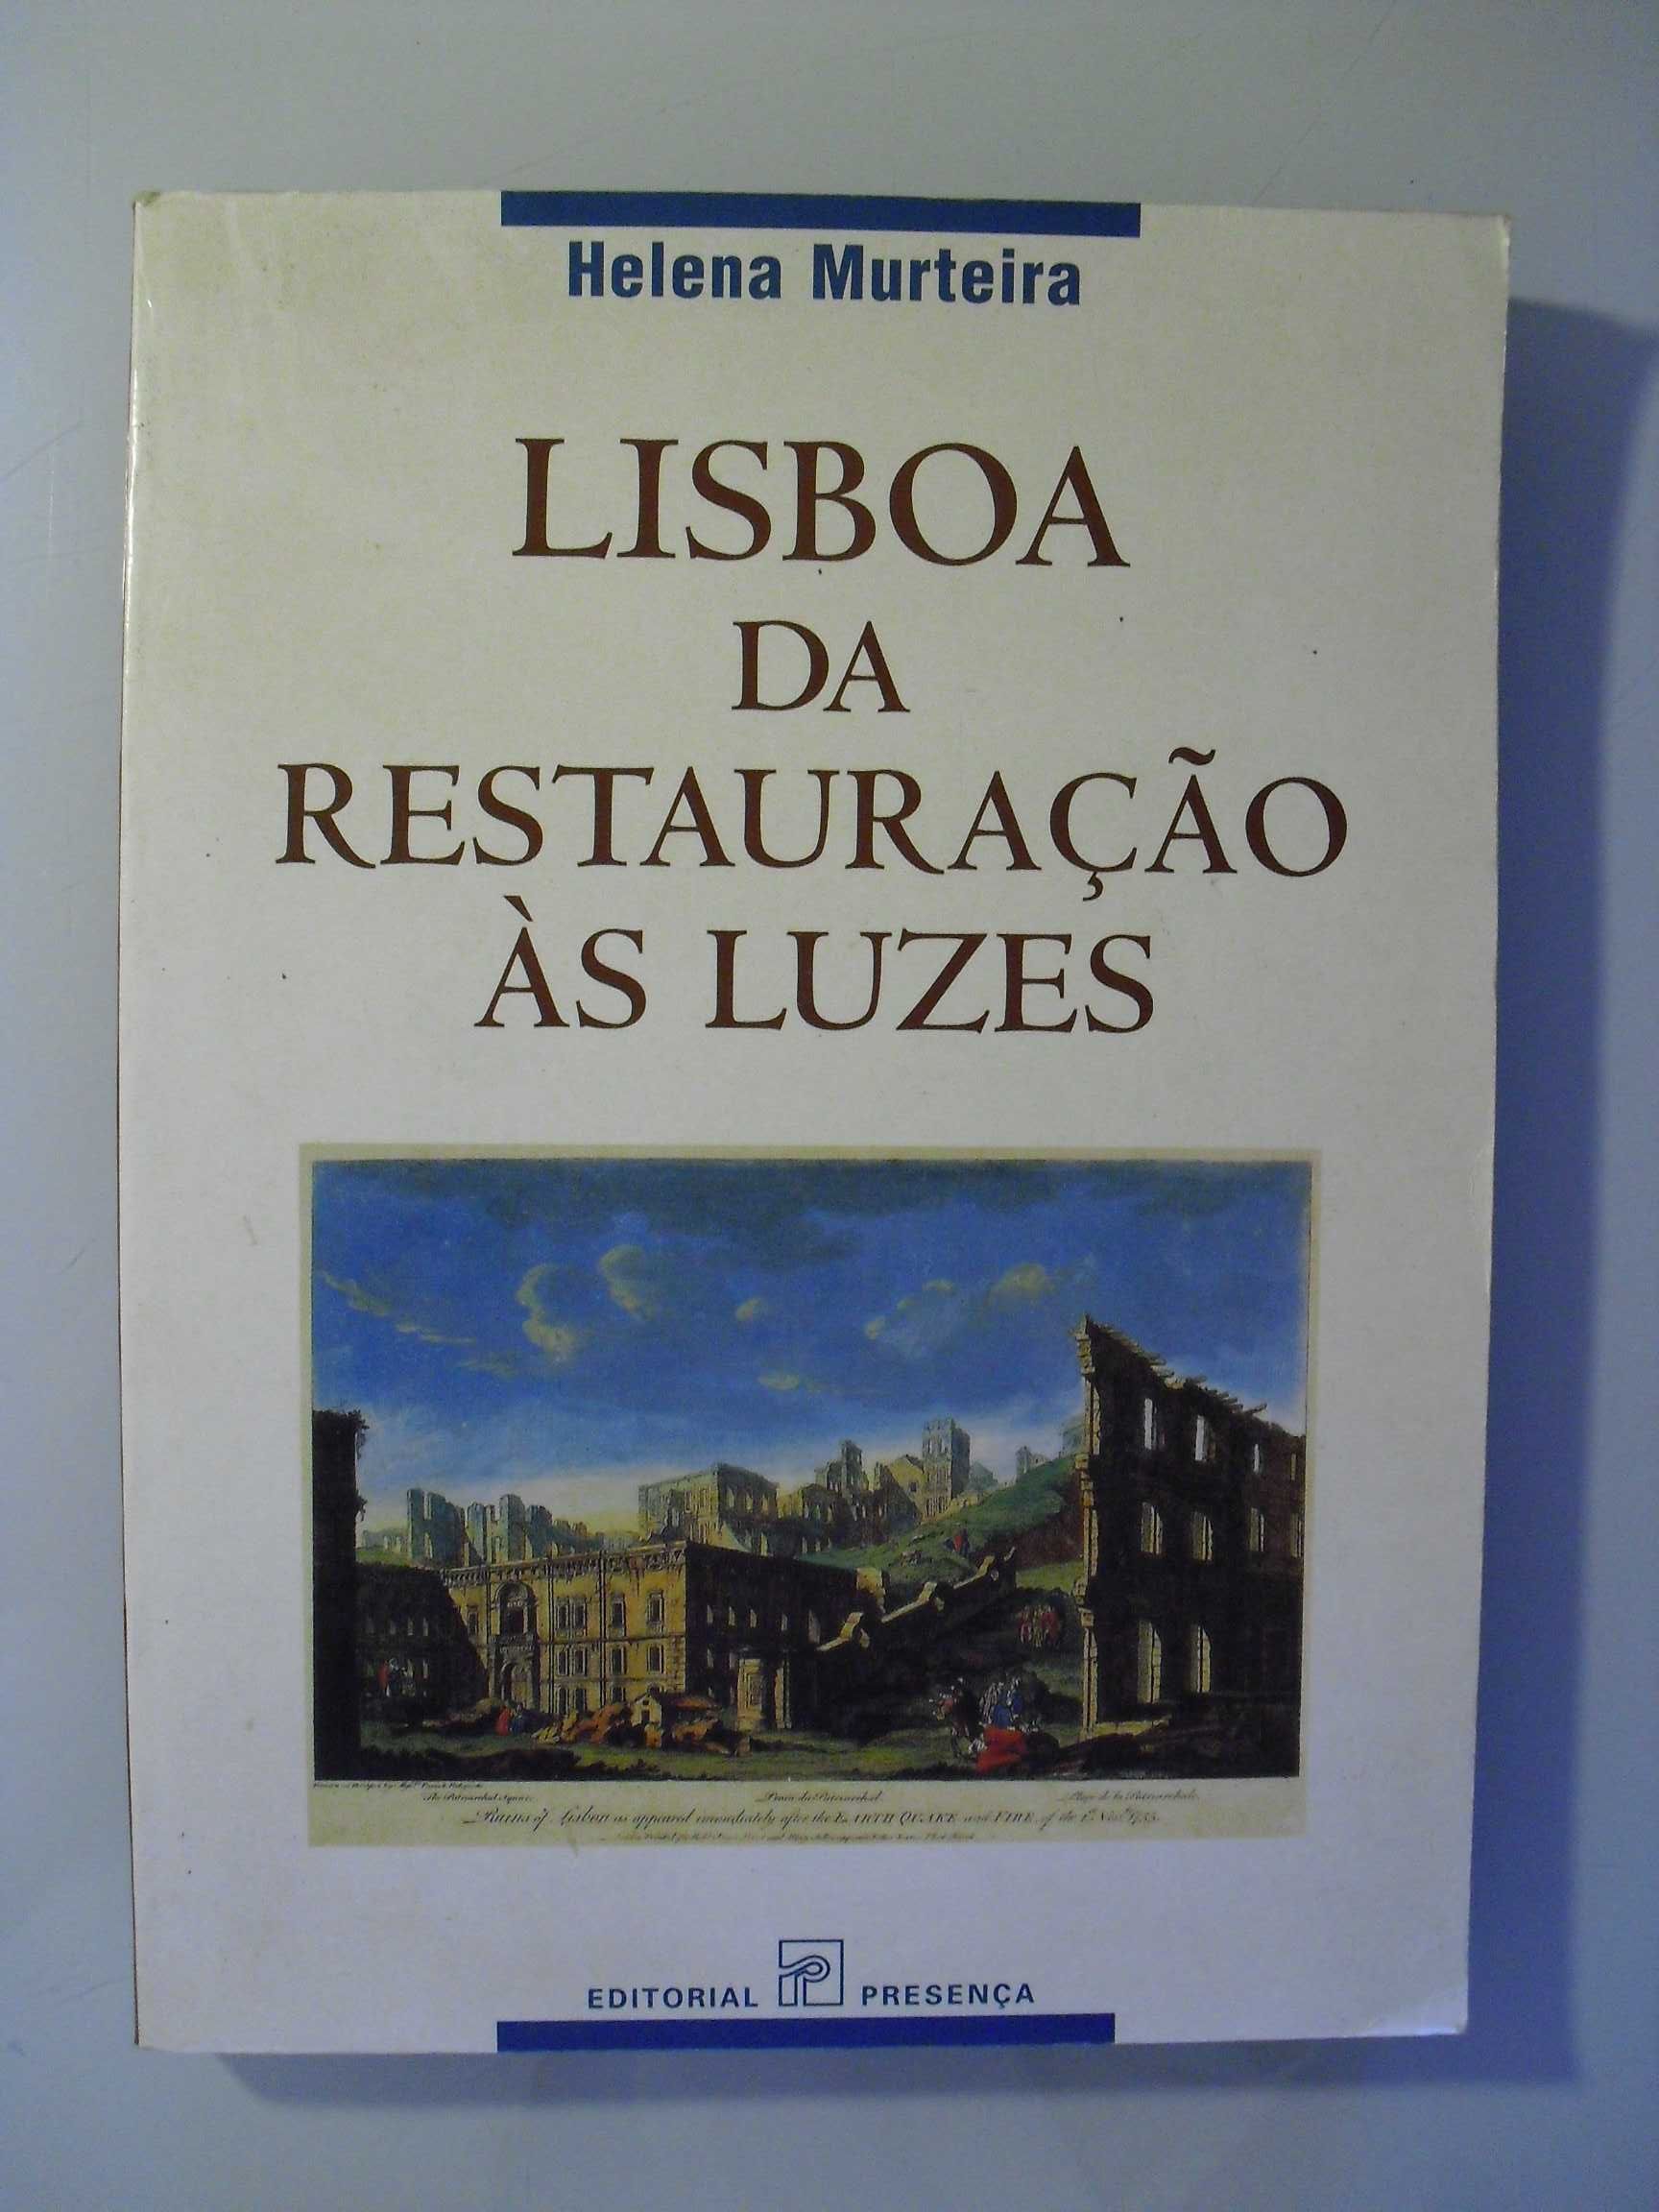 Murteira (Helena);Lisboa da Restauração das Luzes